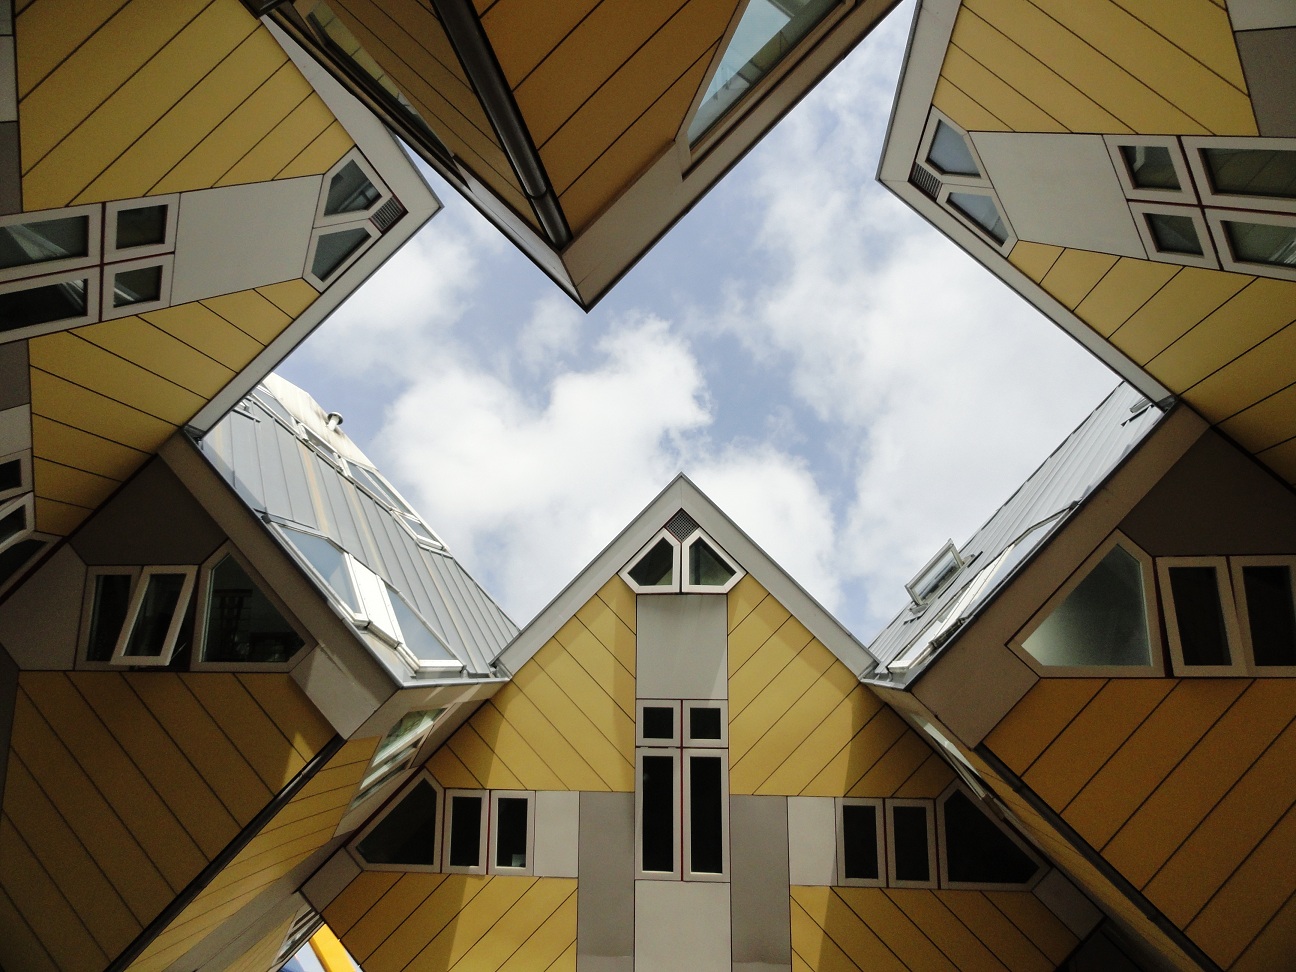 Rotterdam - Les Maisons cubes de Piet Blom